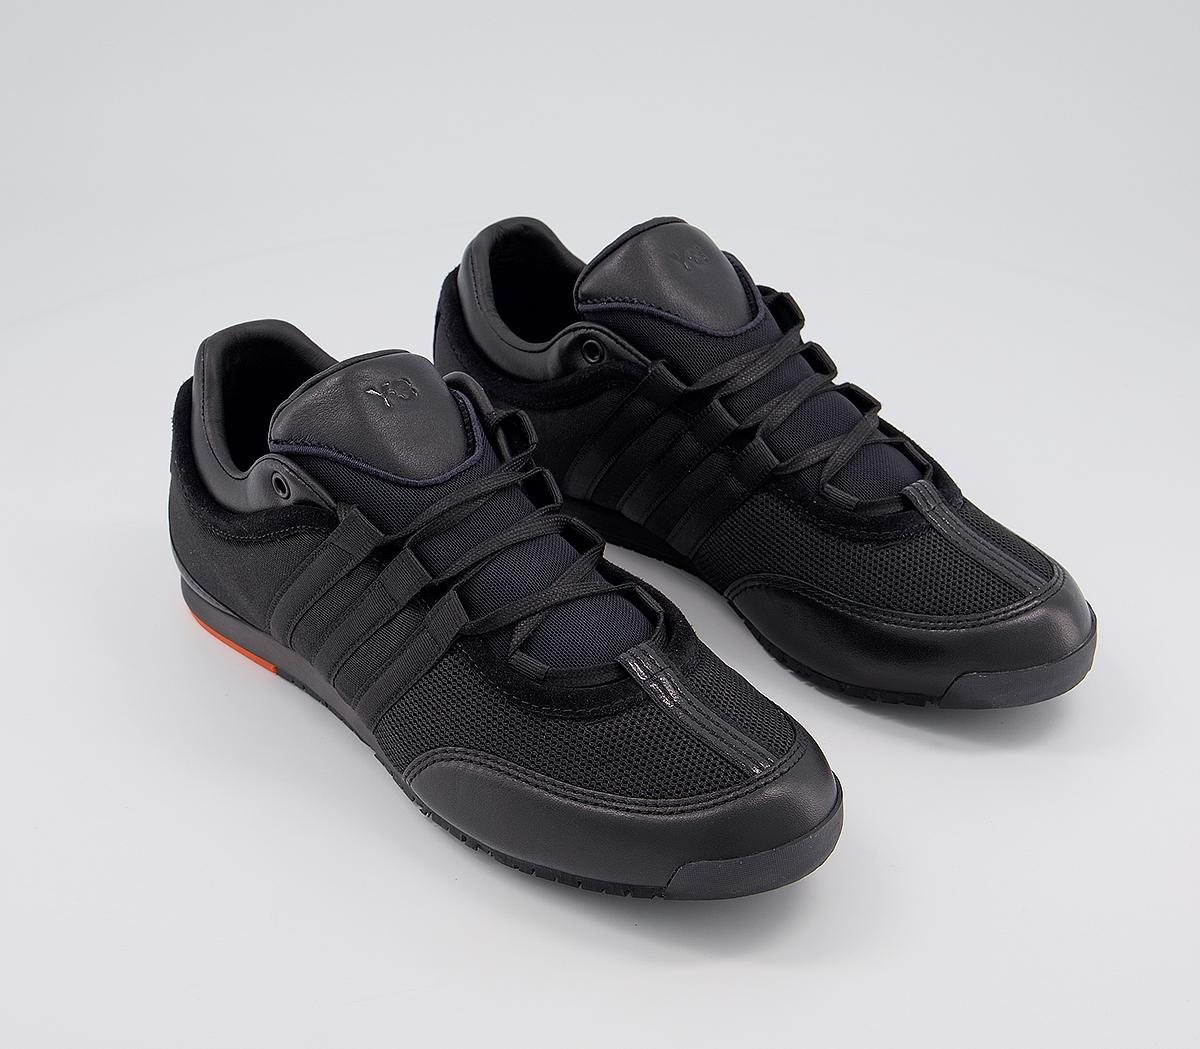 adidas Y3 Y-3 Boxing Black Orange - His trainers